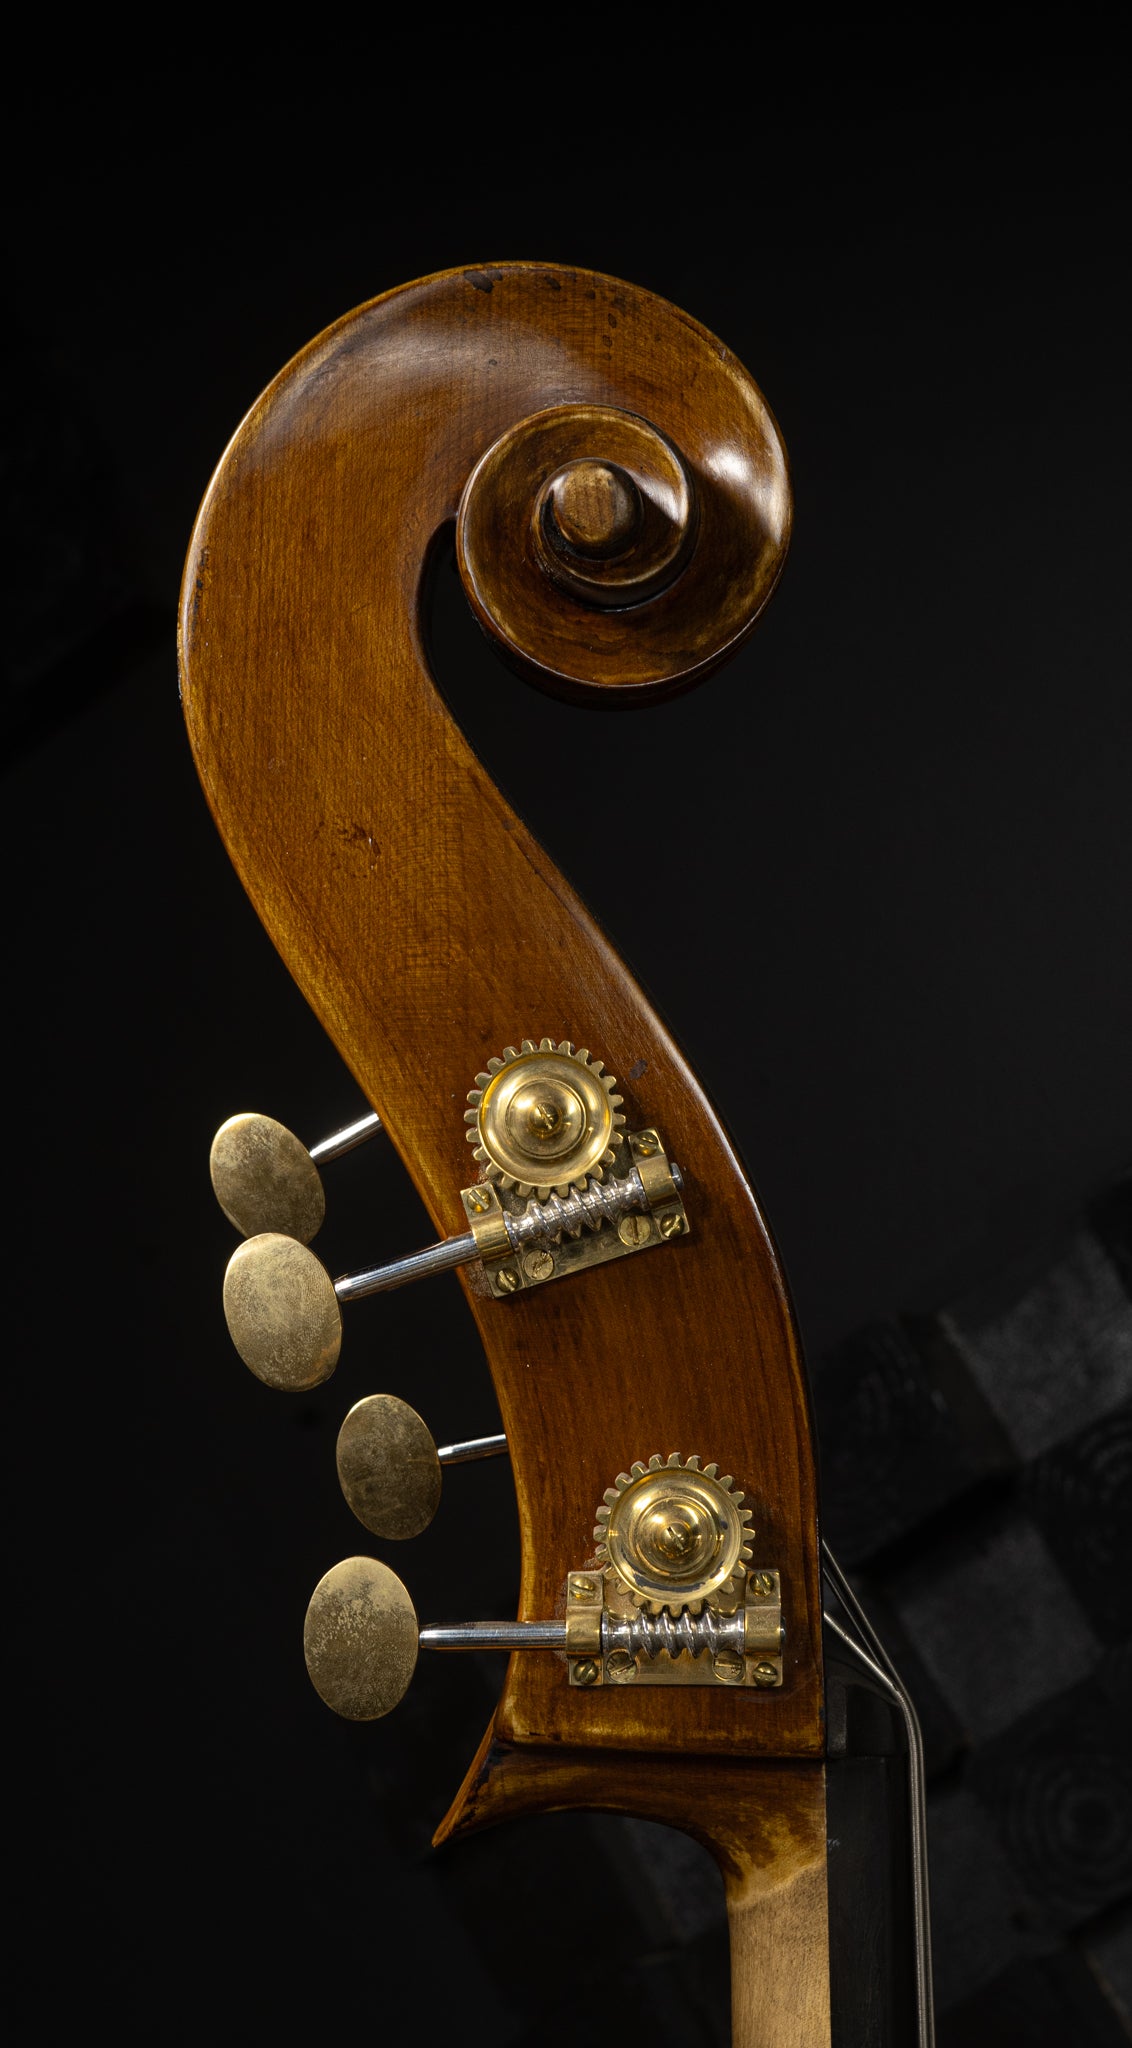 Kolstein Panormo Bass